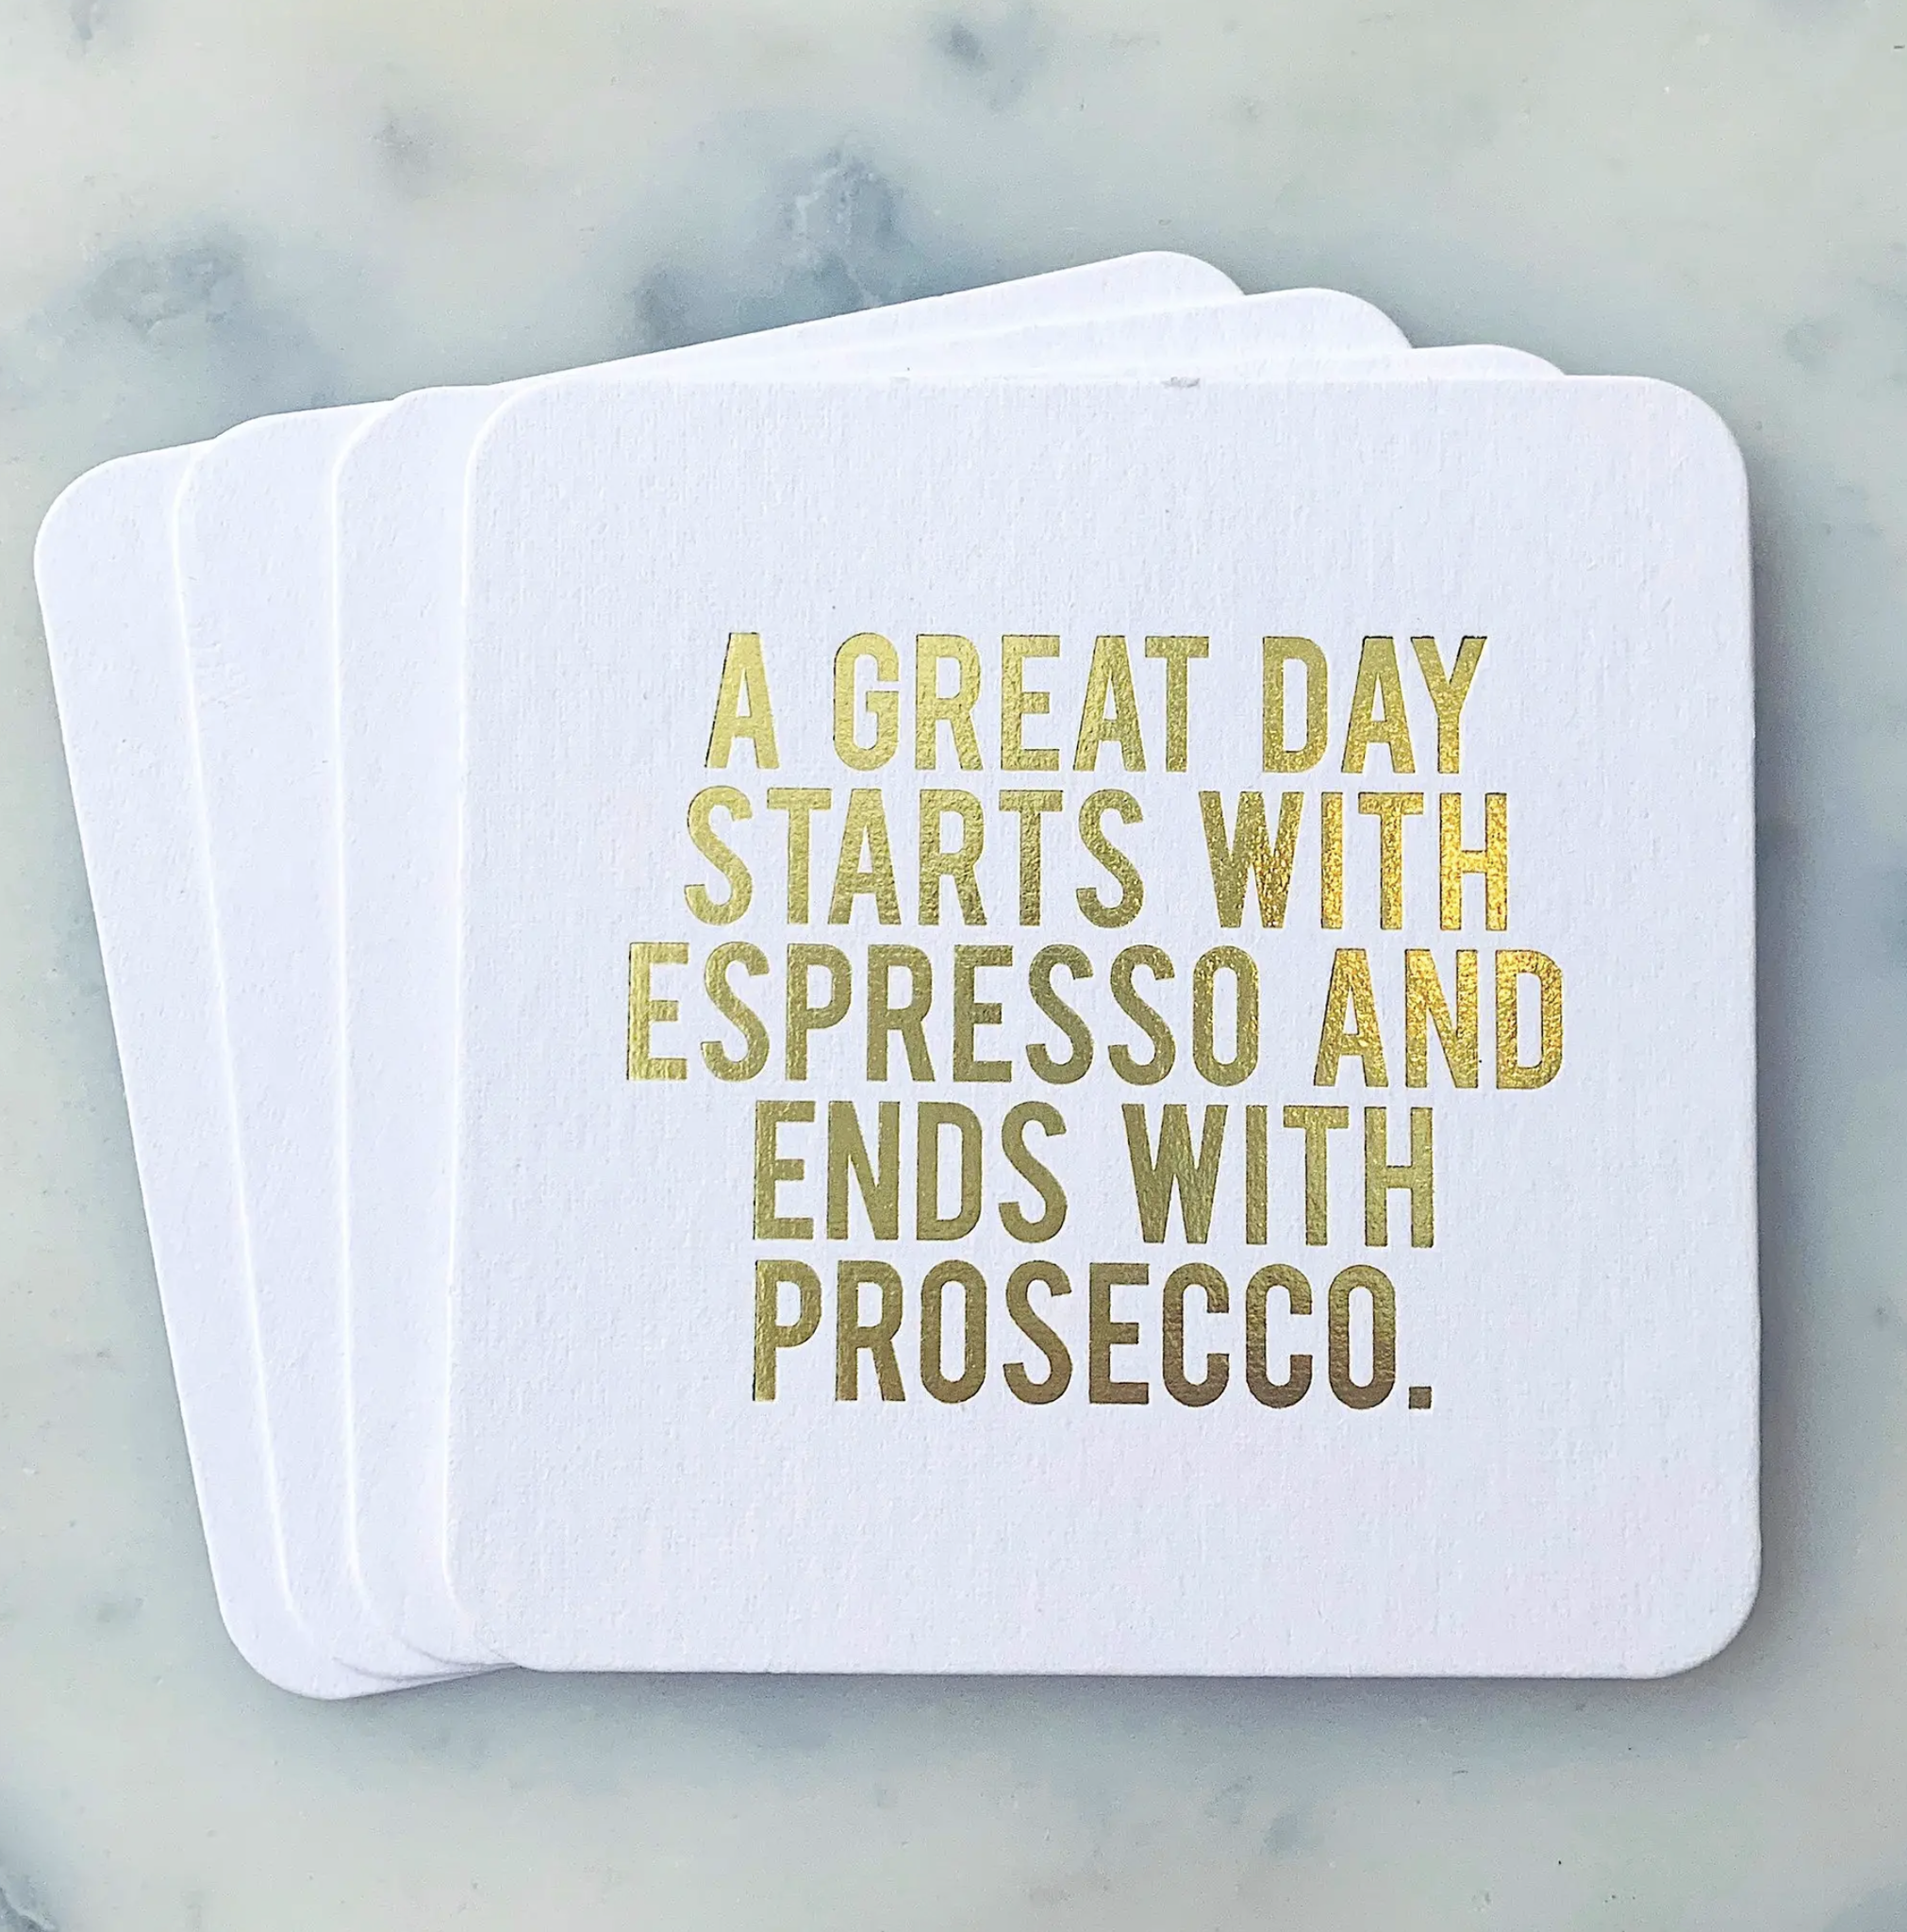 Espresso-Prosecco Coasters 4-pack